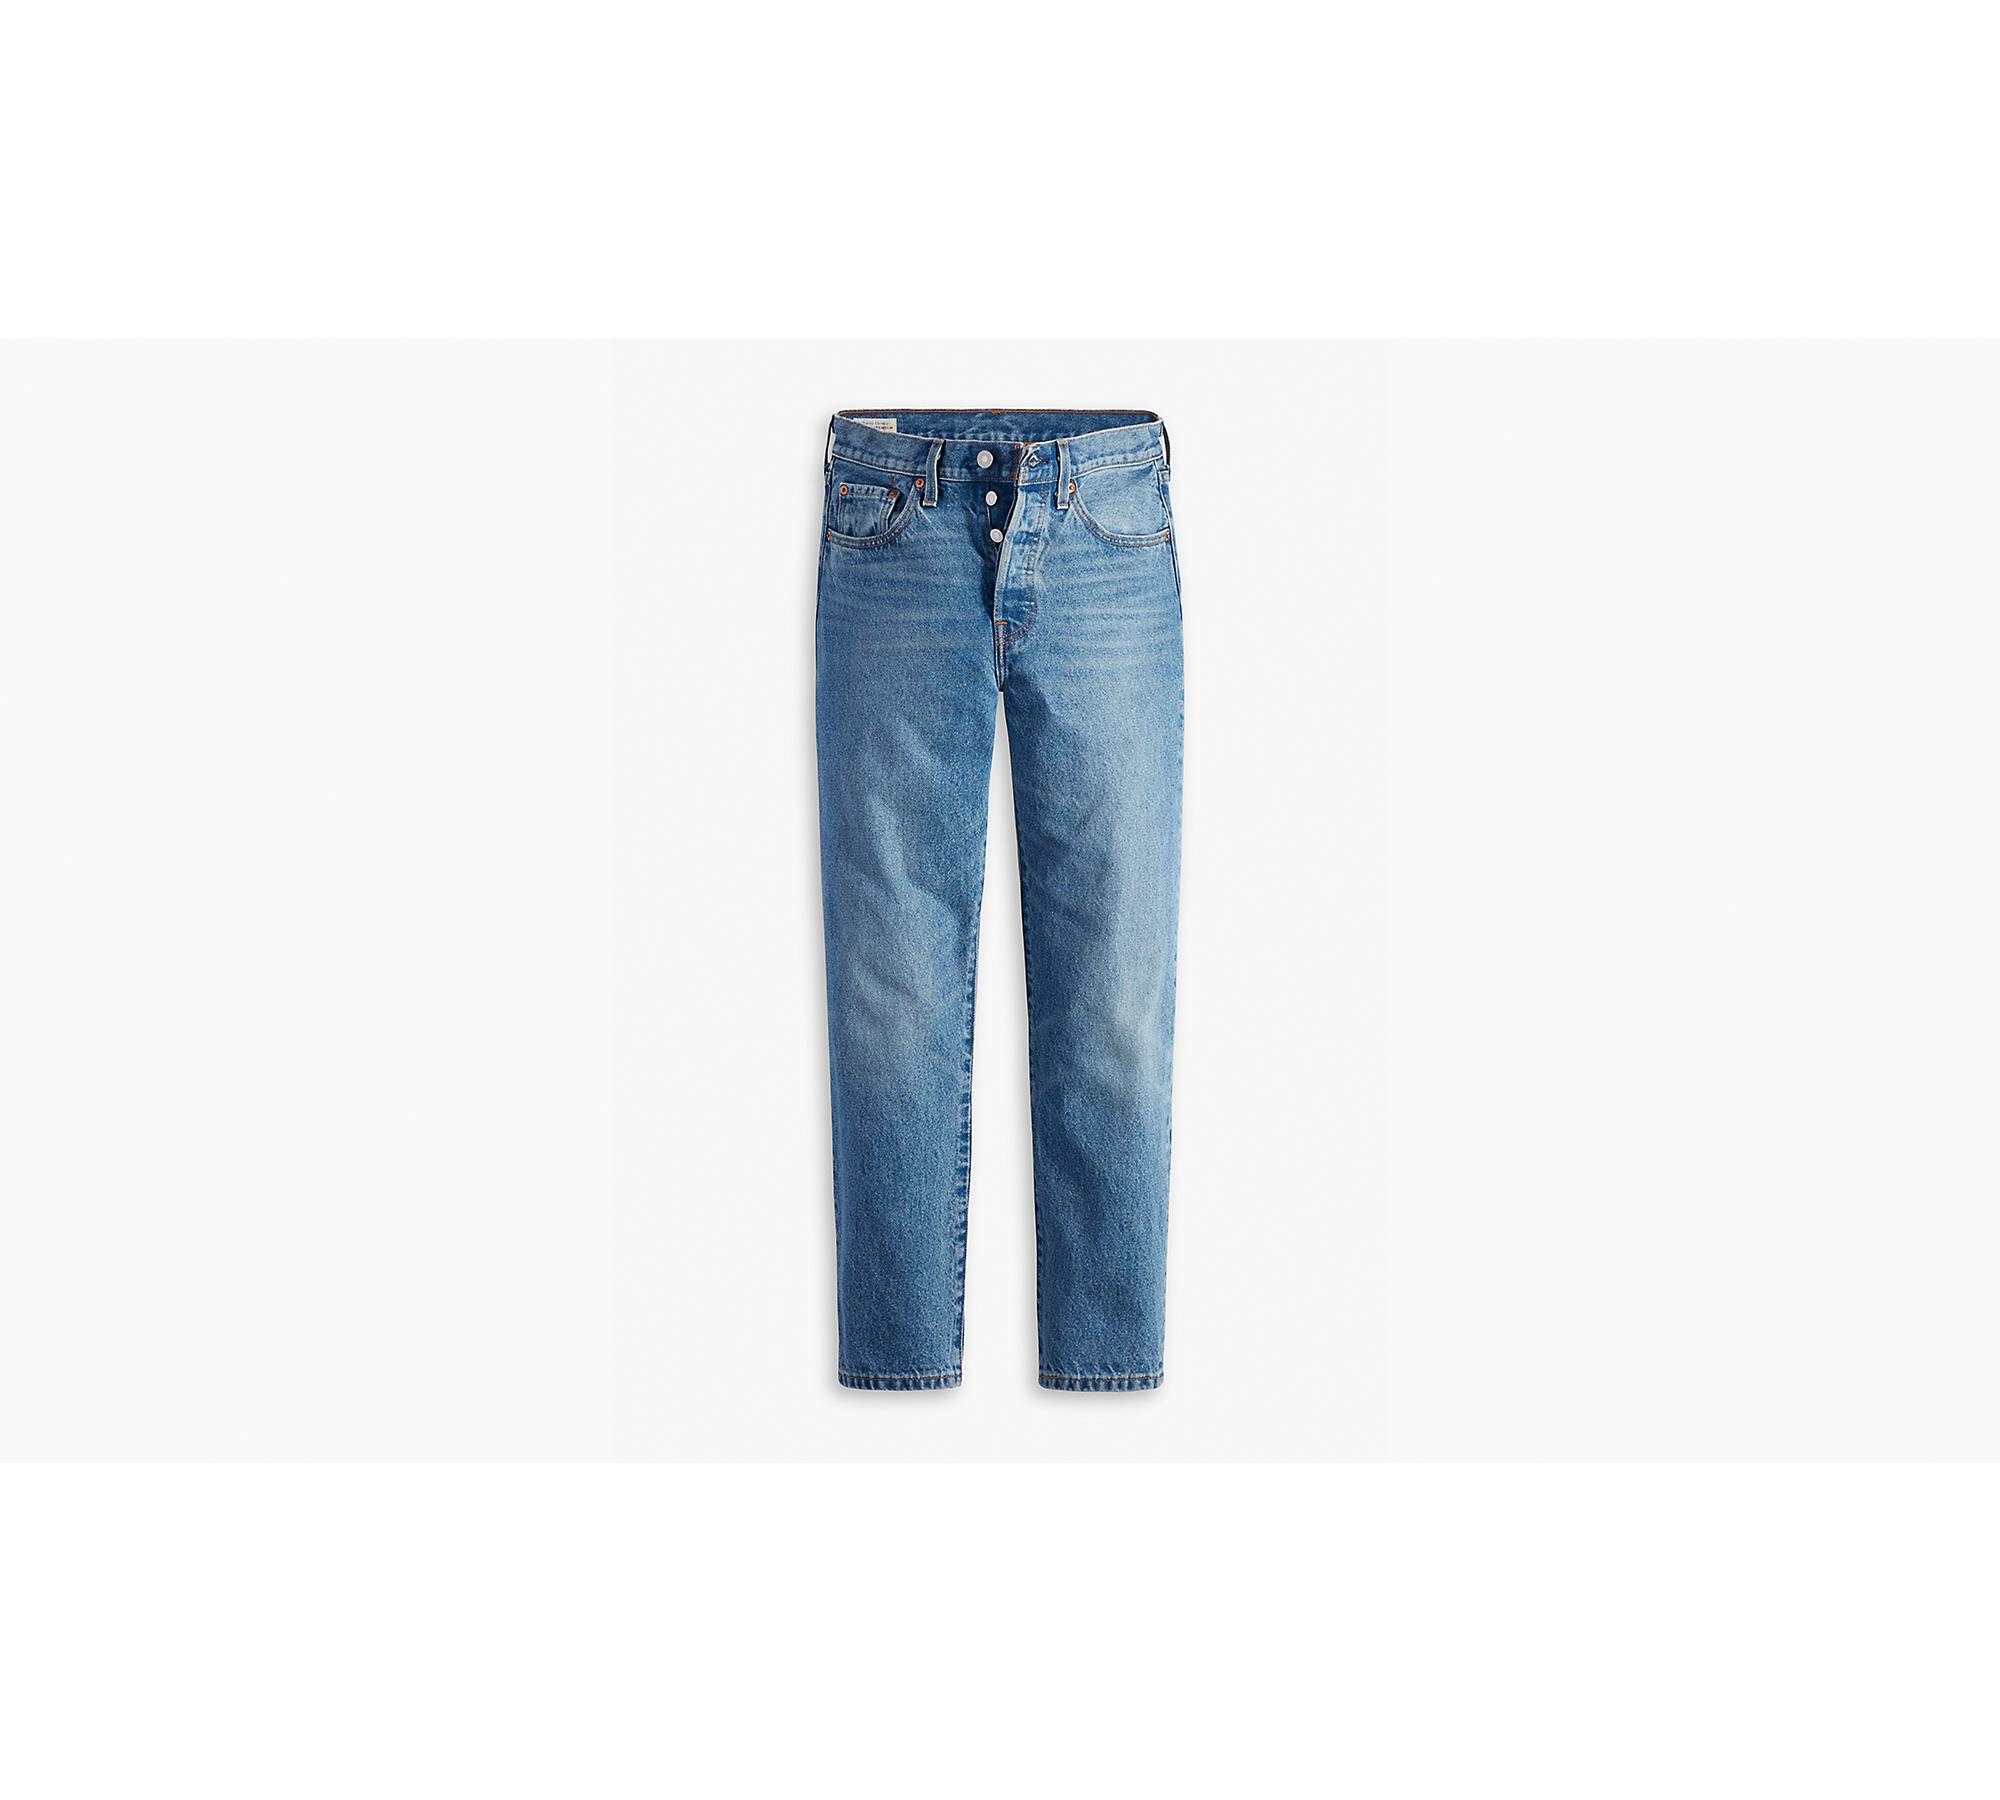 Levi's 501 Crop Jeans - Pink Denim Jeans - Women's Denim Jeans - Lulus